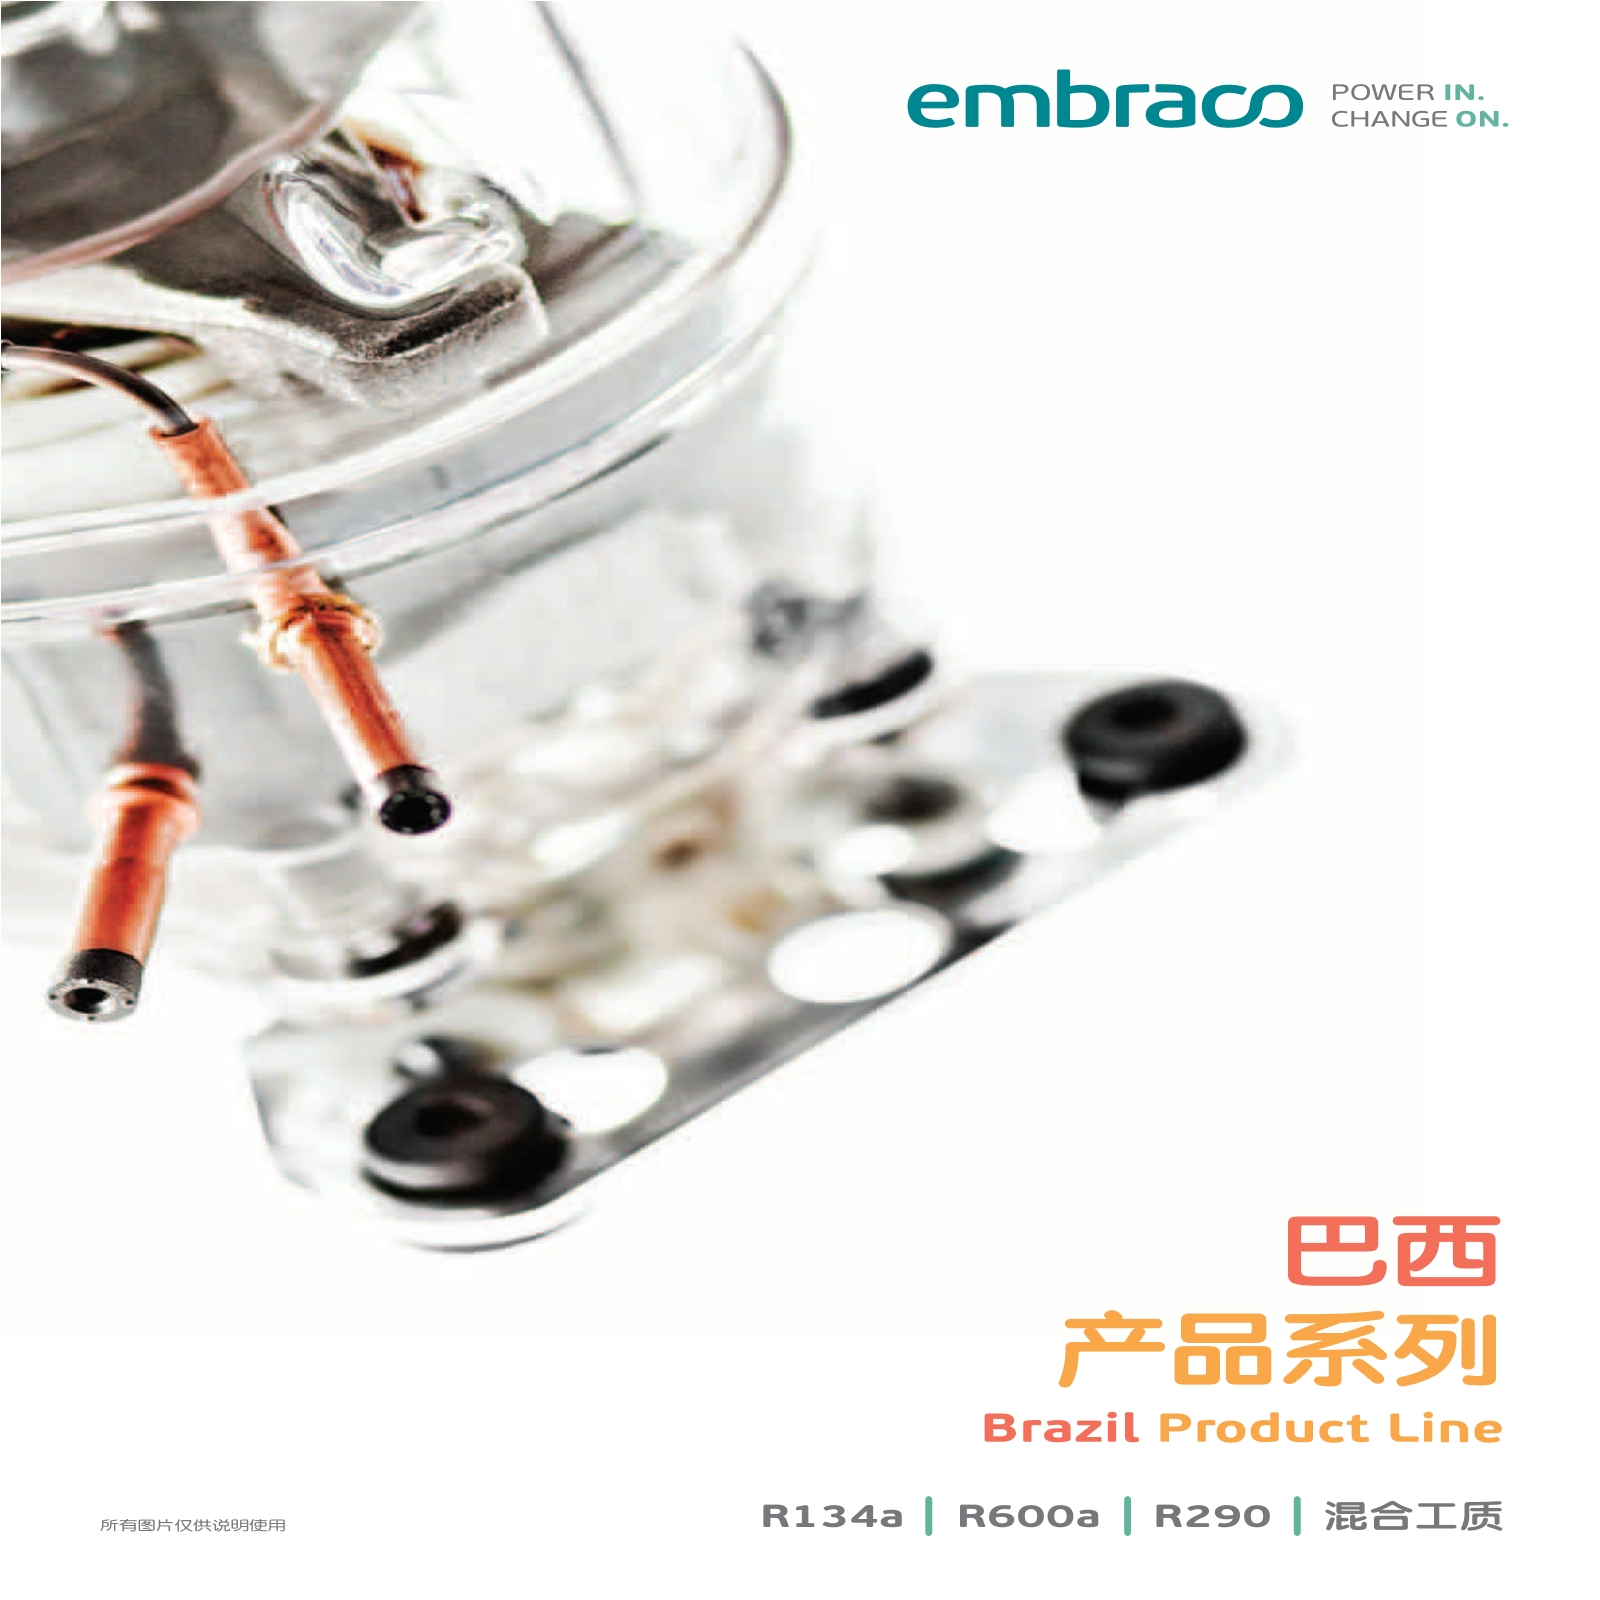 恩布拉科雪花压缩机-巴西产品系列